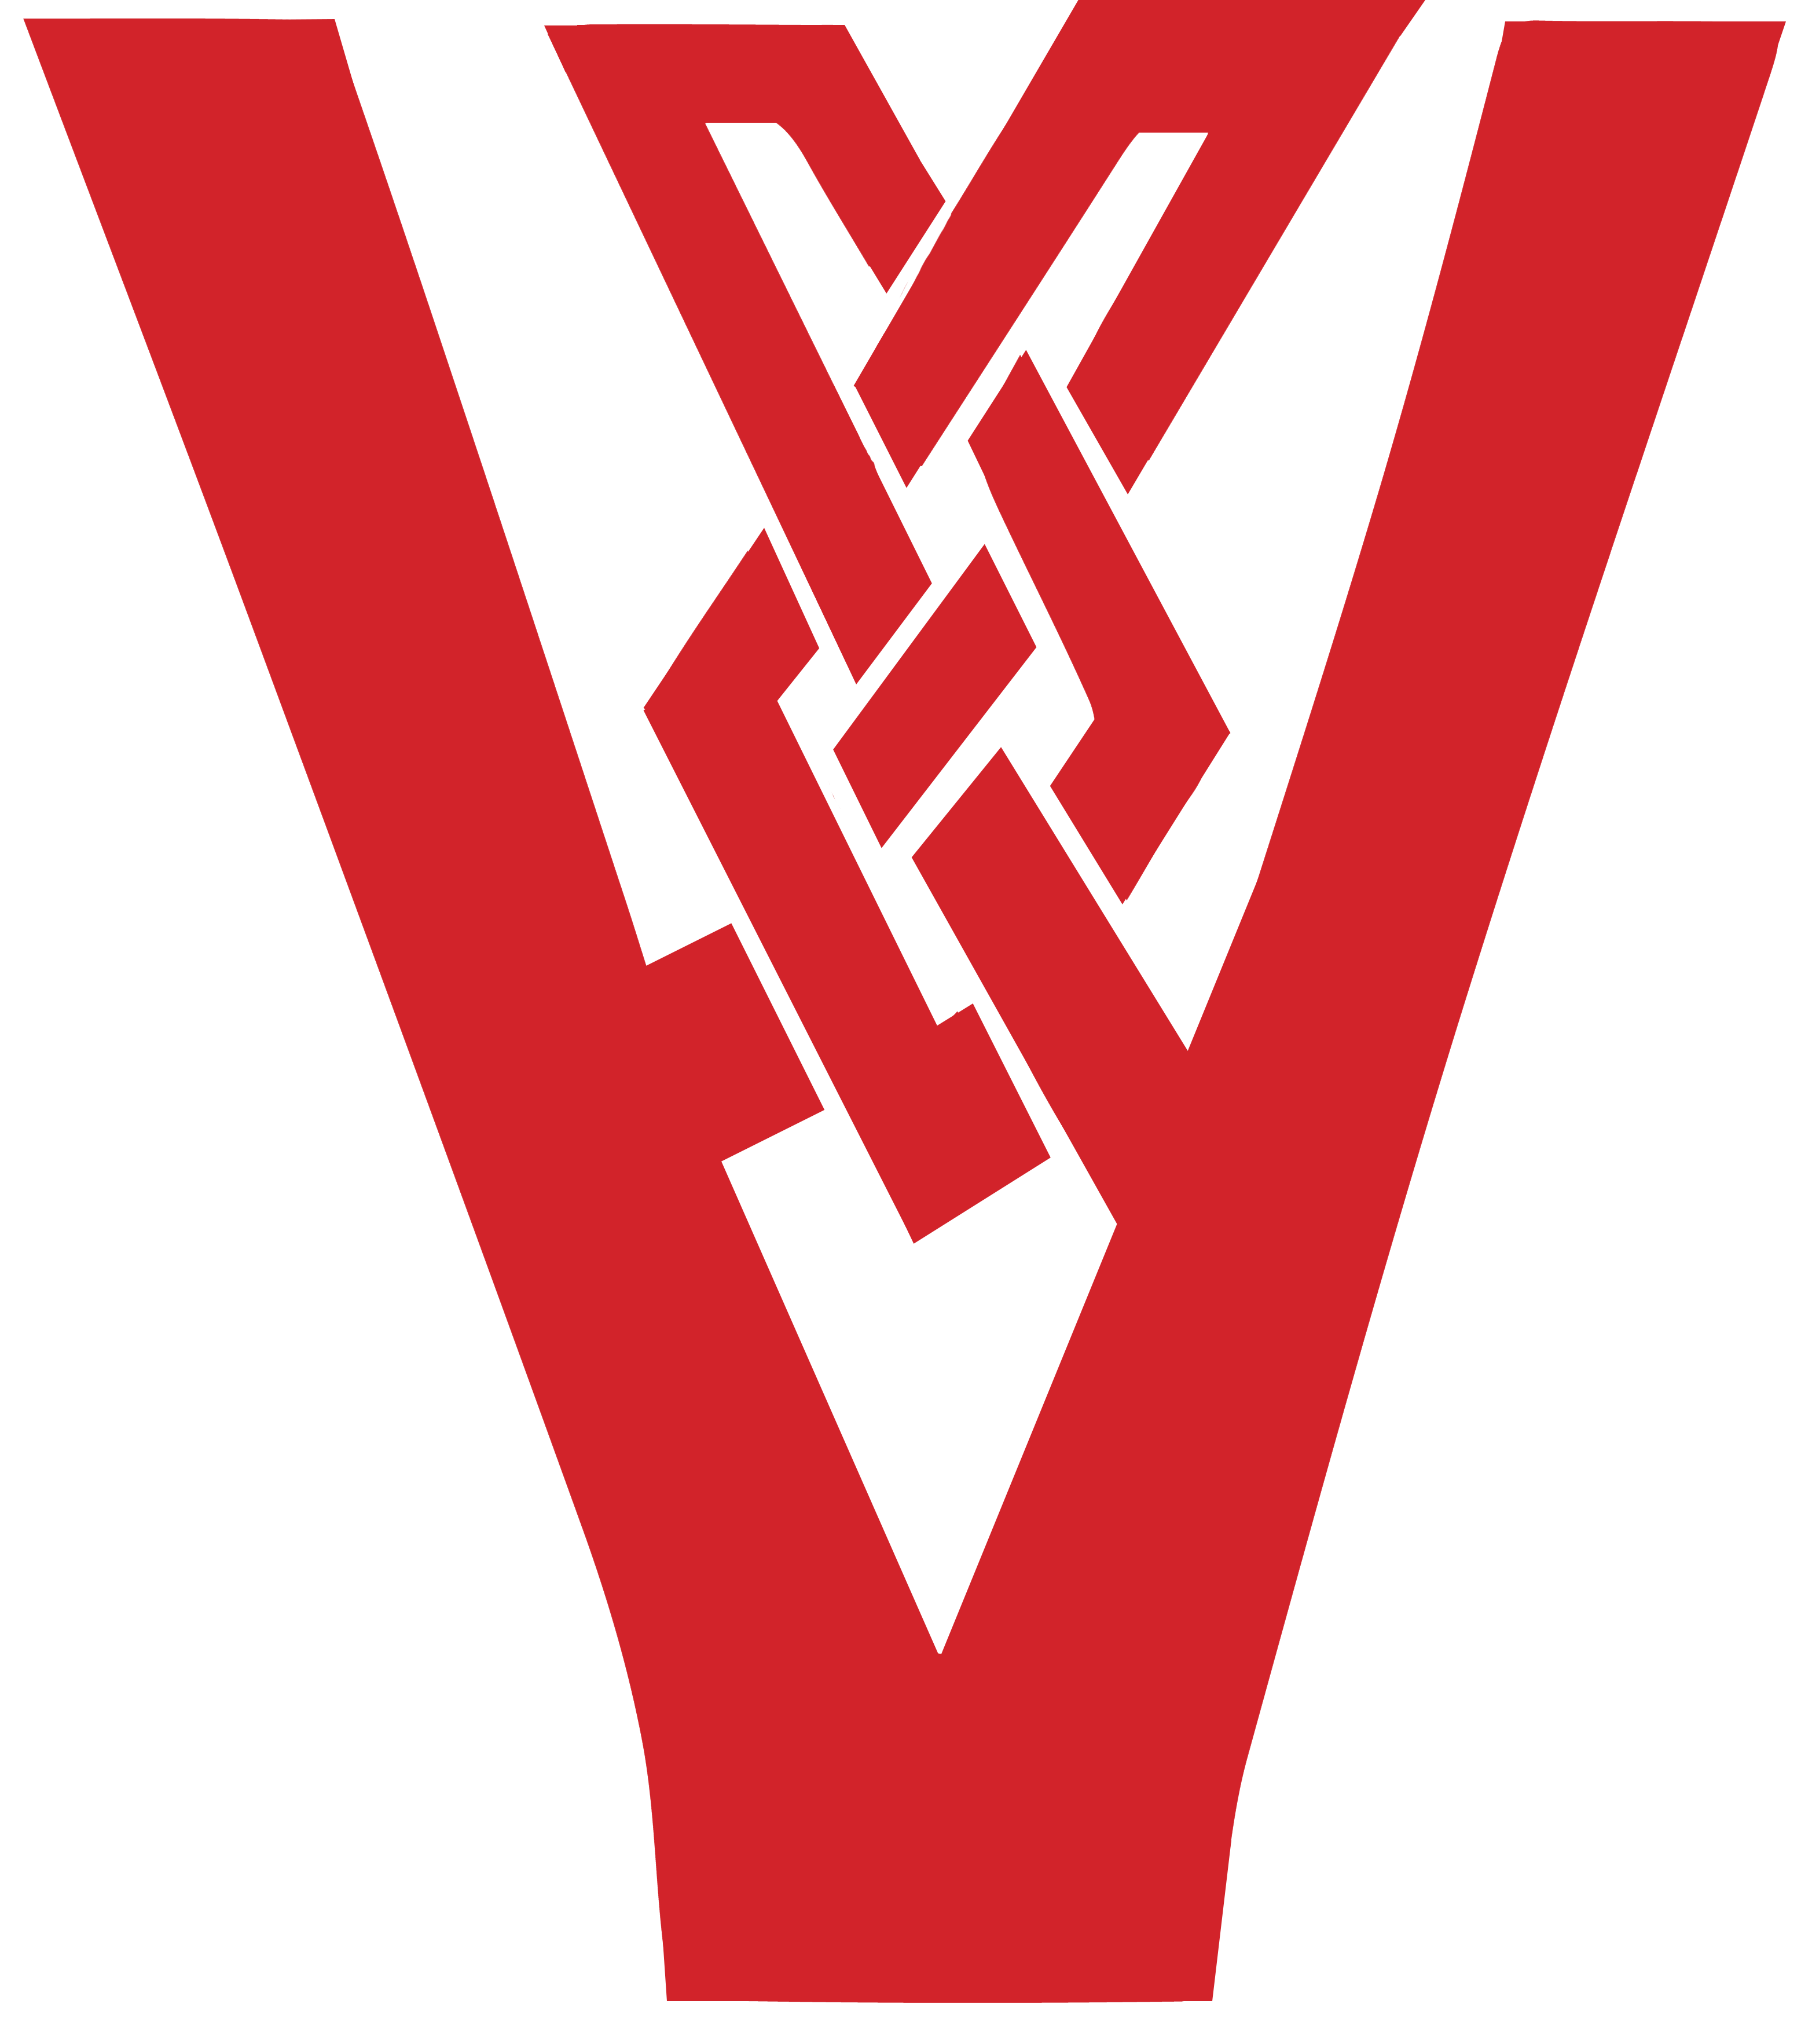 Von thomas logo file - red